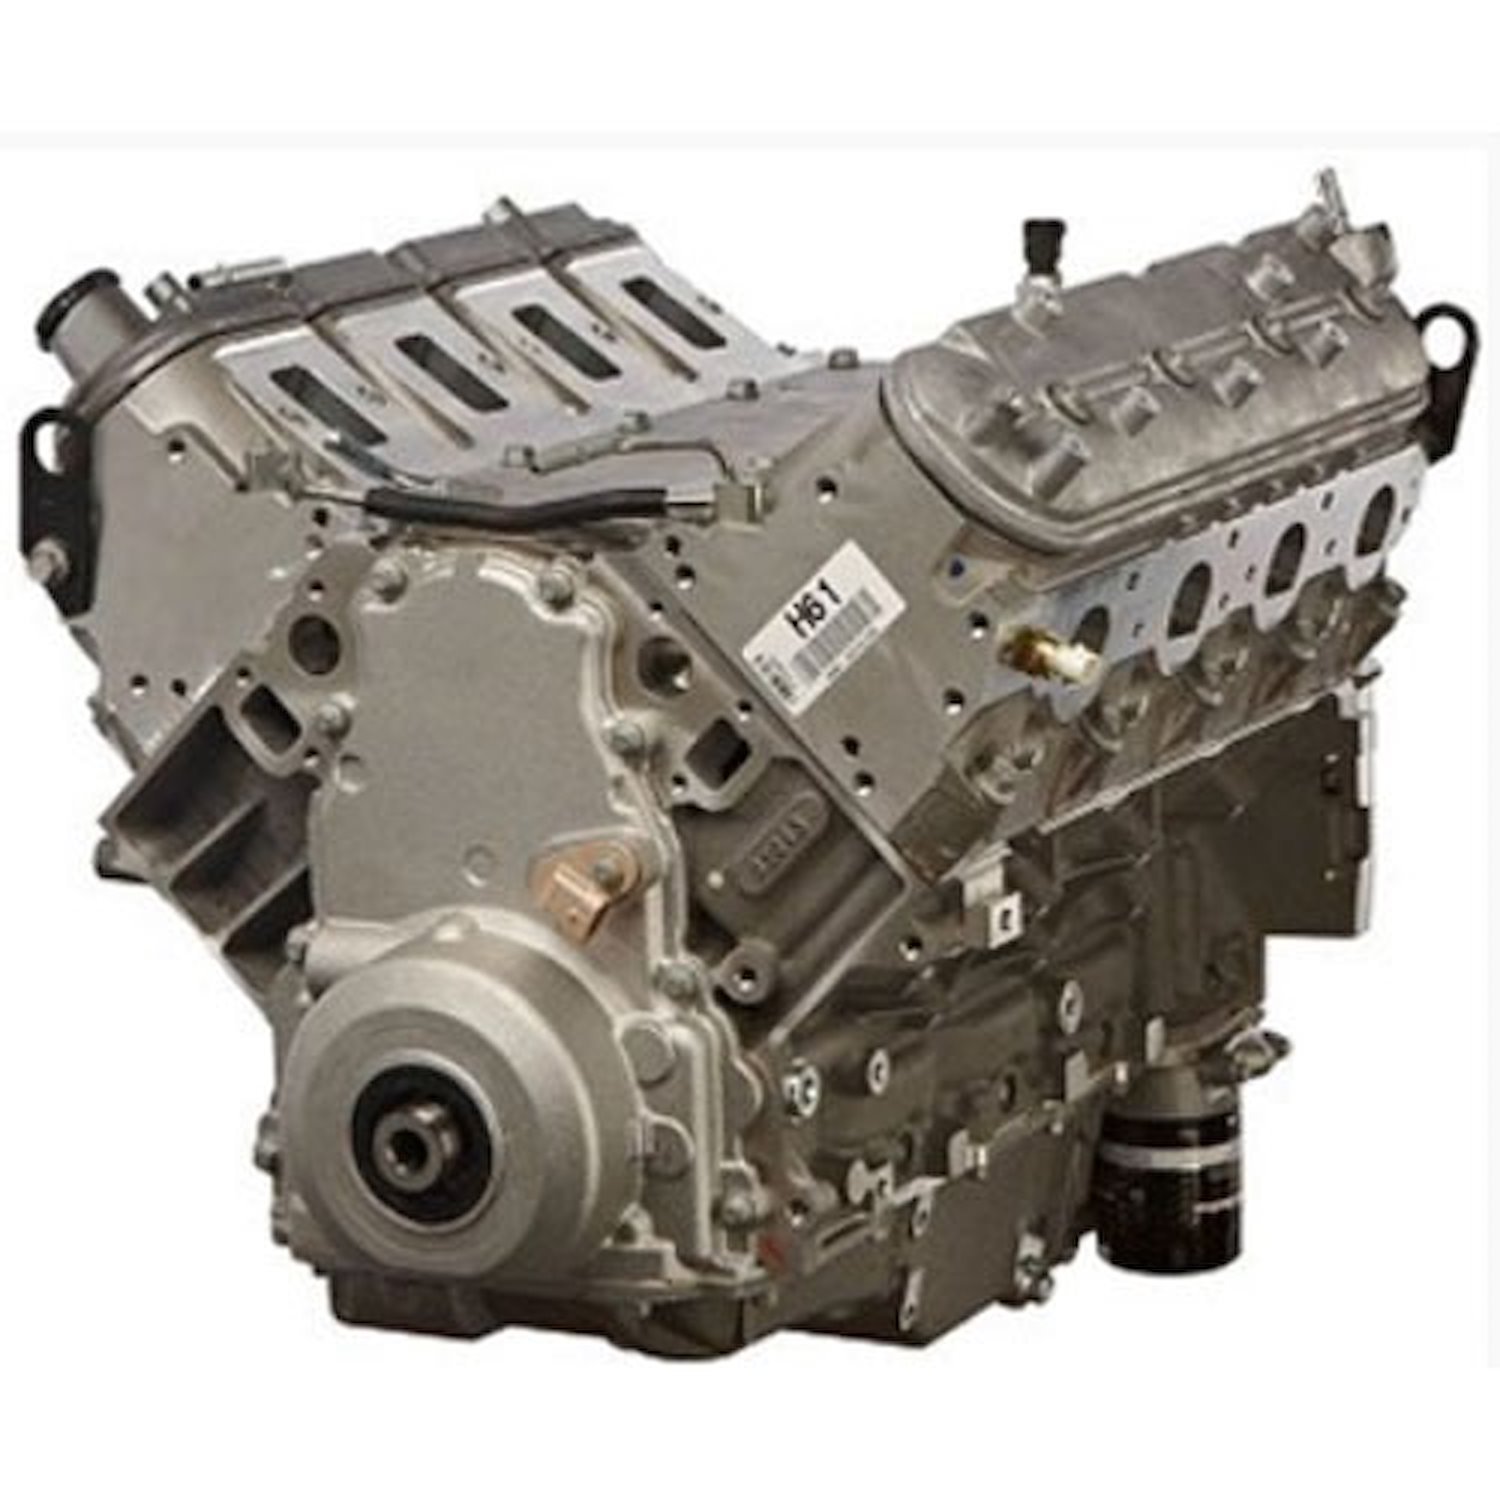 Goodwrench LS7 427ci 7.0L Long Block Engine, 2006-2012 Corvette